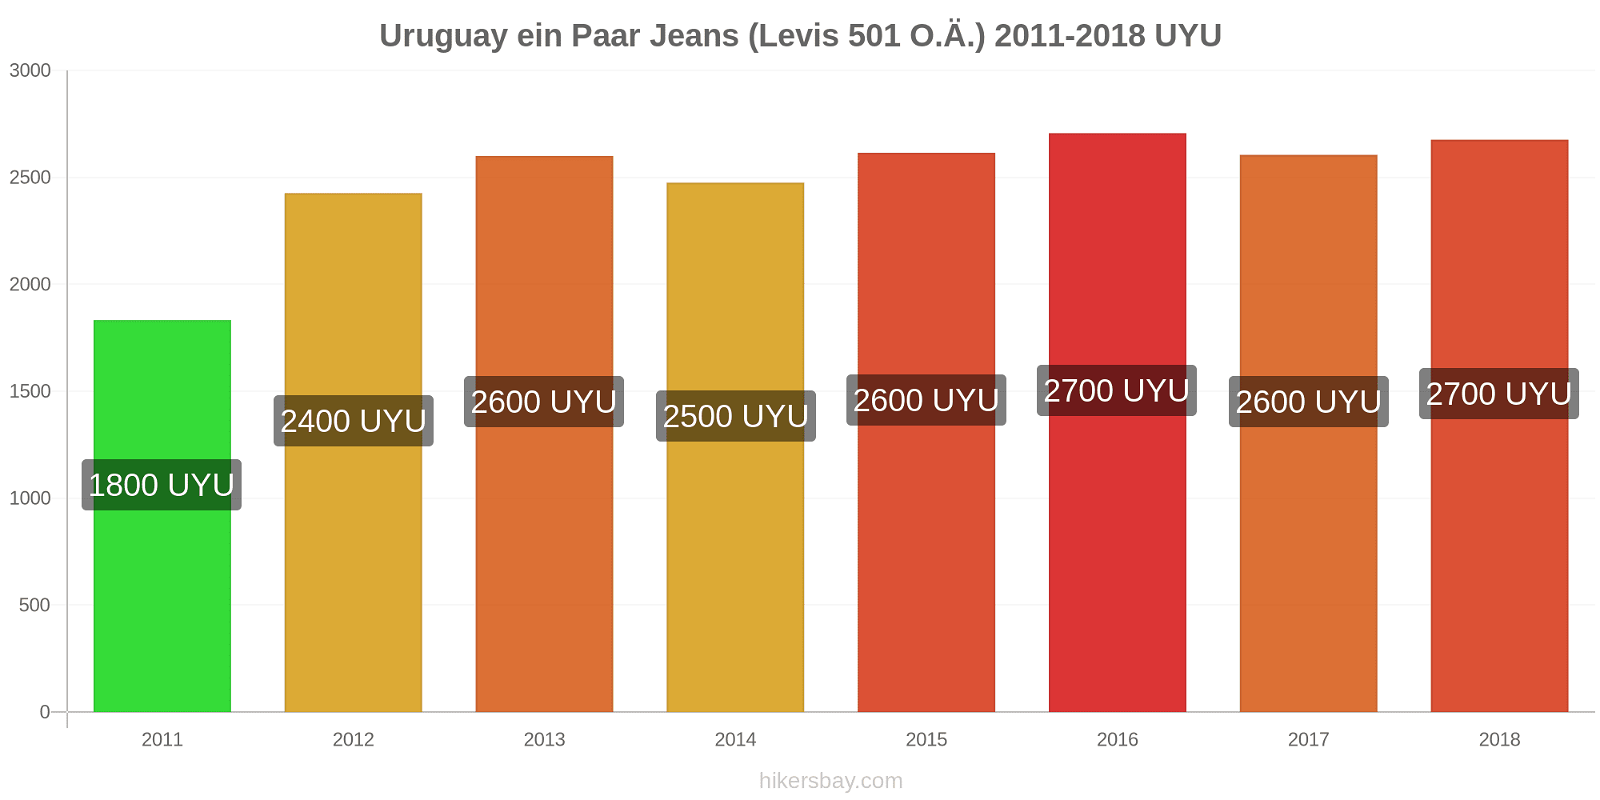 Uruguay Preisänderungen 1 Paar Jeans (Levis 501 oder ähnlich) hikersbay.com